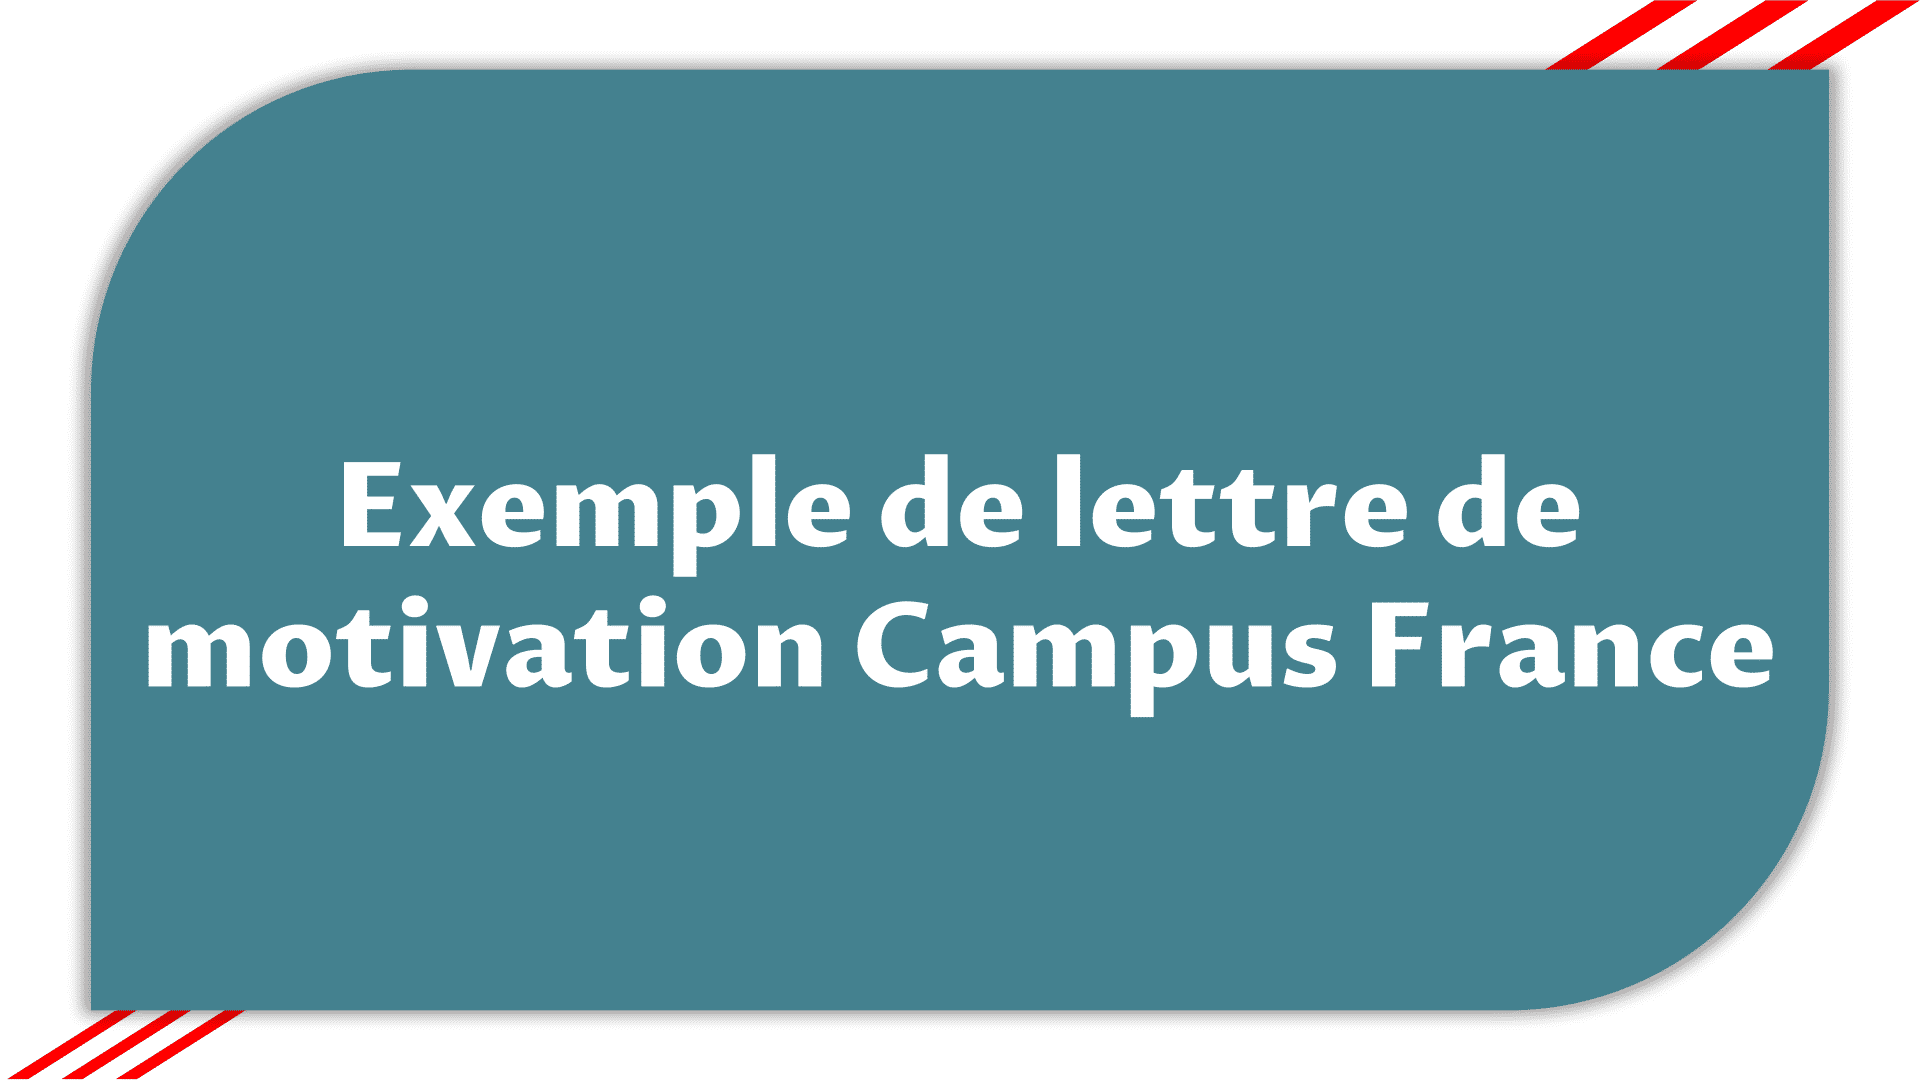 Exemple lettre de motivation Campus France - Exemple Gratuit